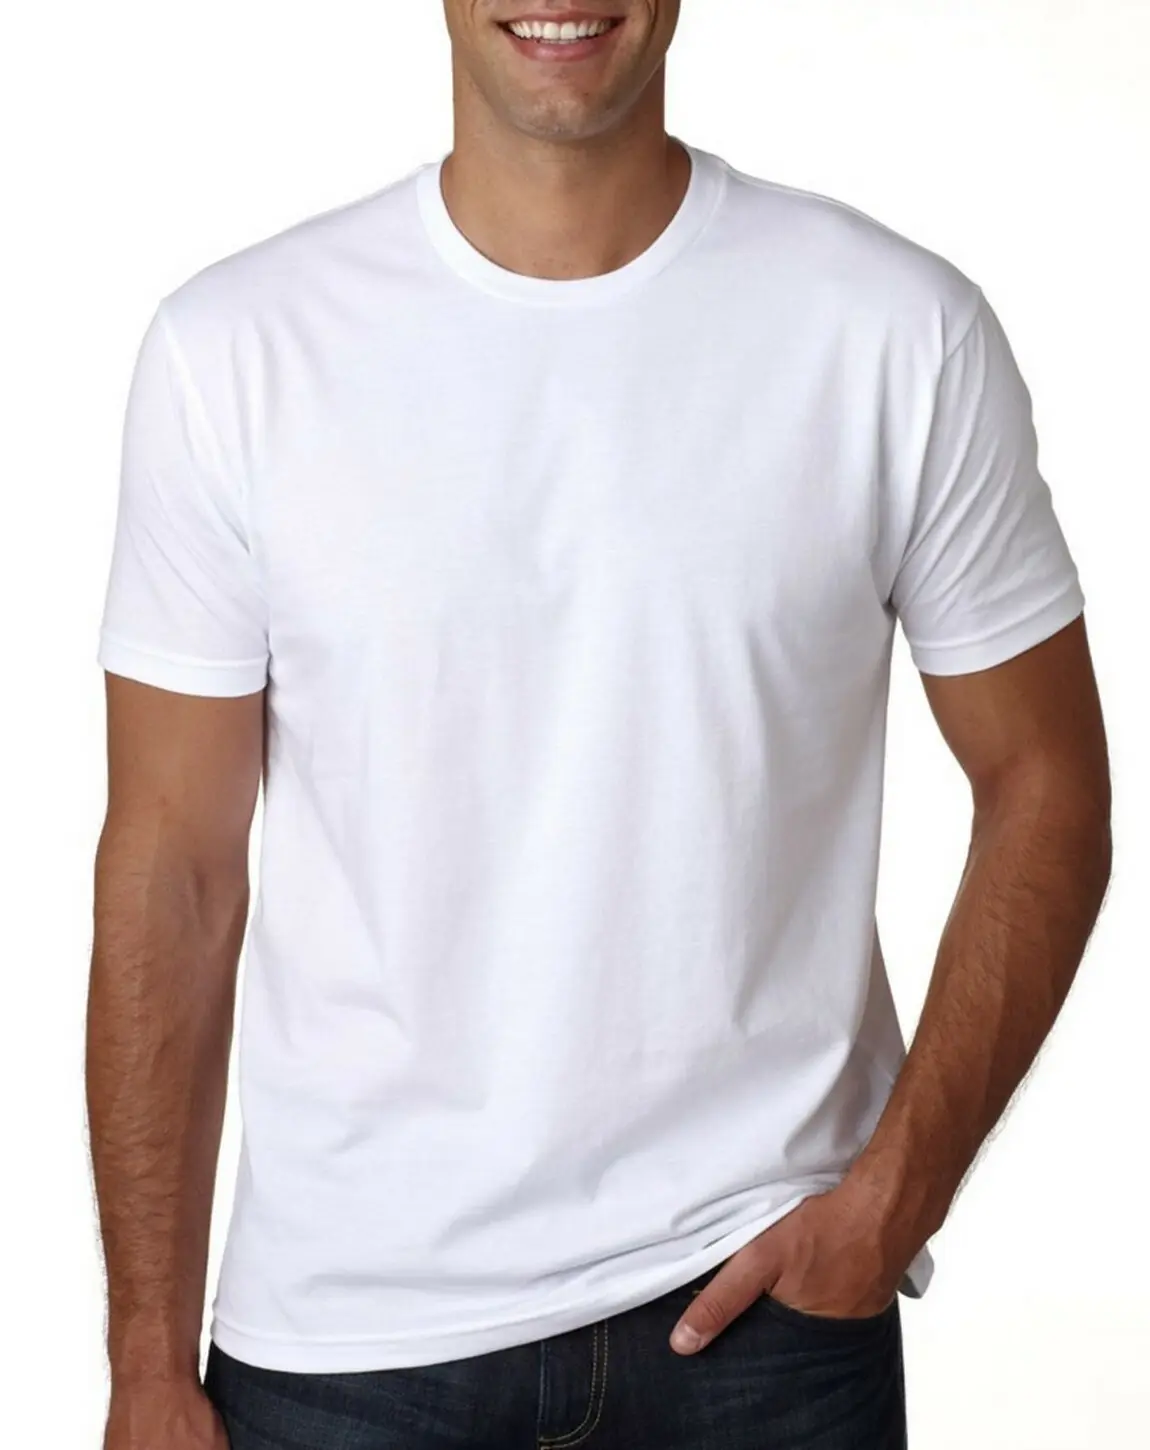 Camiseta hombre oersonalizadass 100% algodon schlicht großhandel gute qualität t-shirts schlicht weiß rundhalsausschnitt t-shirt